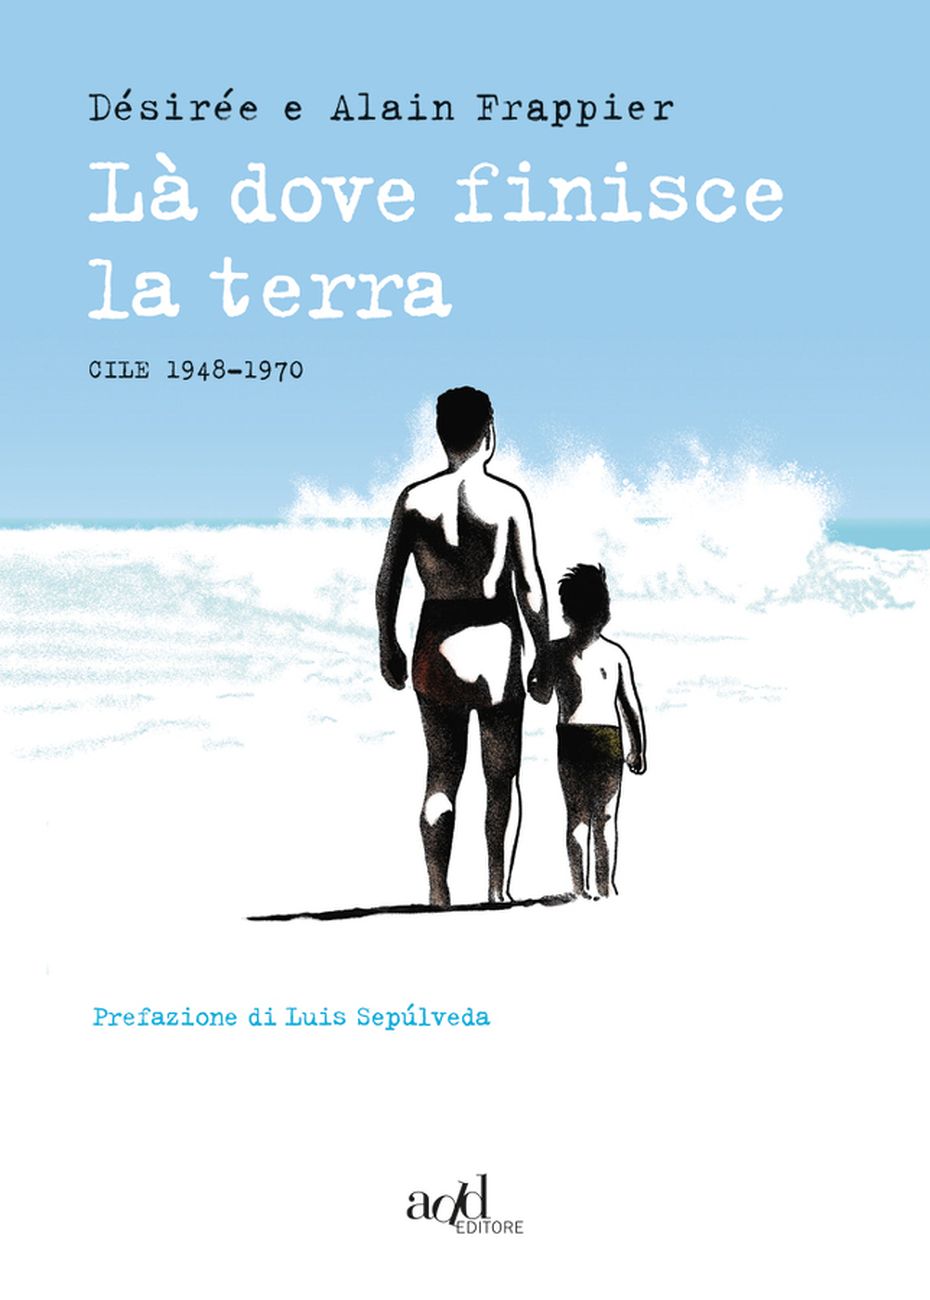 Désirée & Alain Frappier – Là dove finisce la terra (Add Editore, Torino 2019)